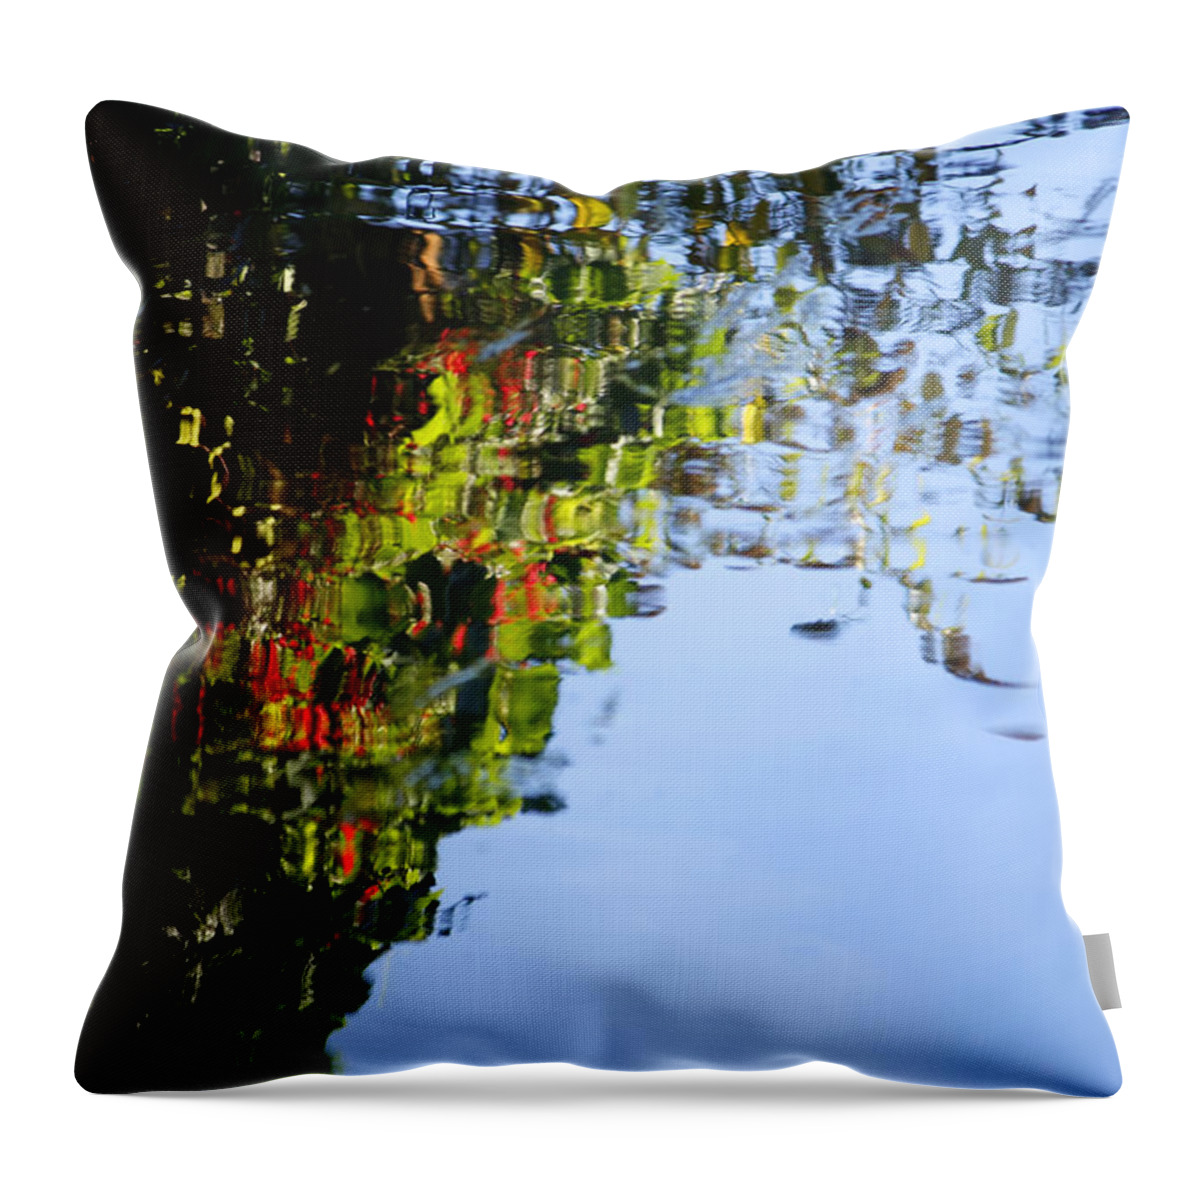 Thienemann Throw Pillow featuring the photograph Canterbury Creek by KG Thienemann